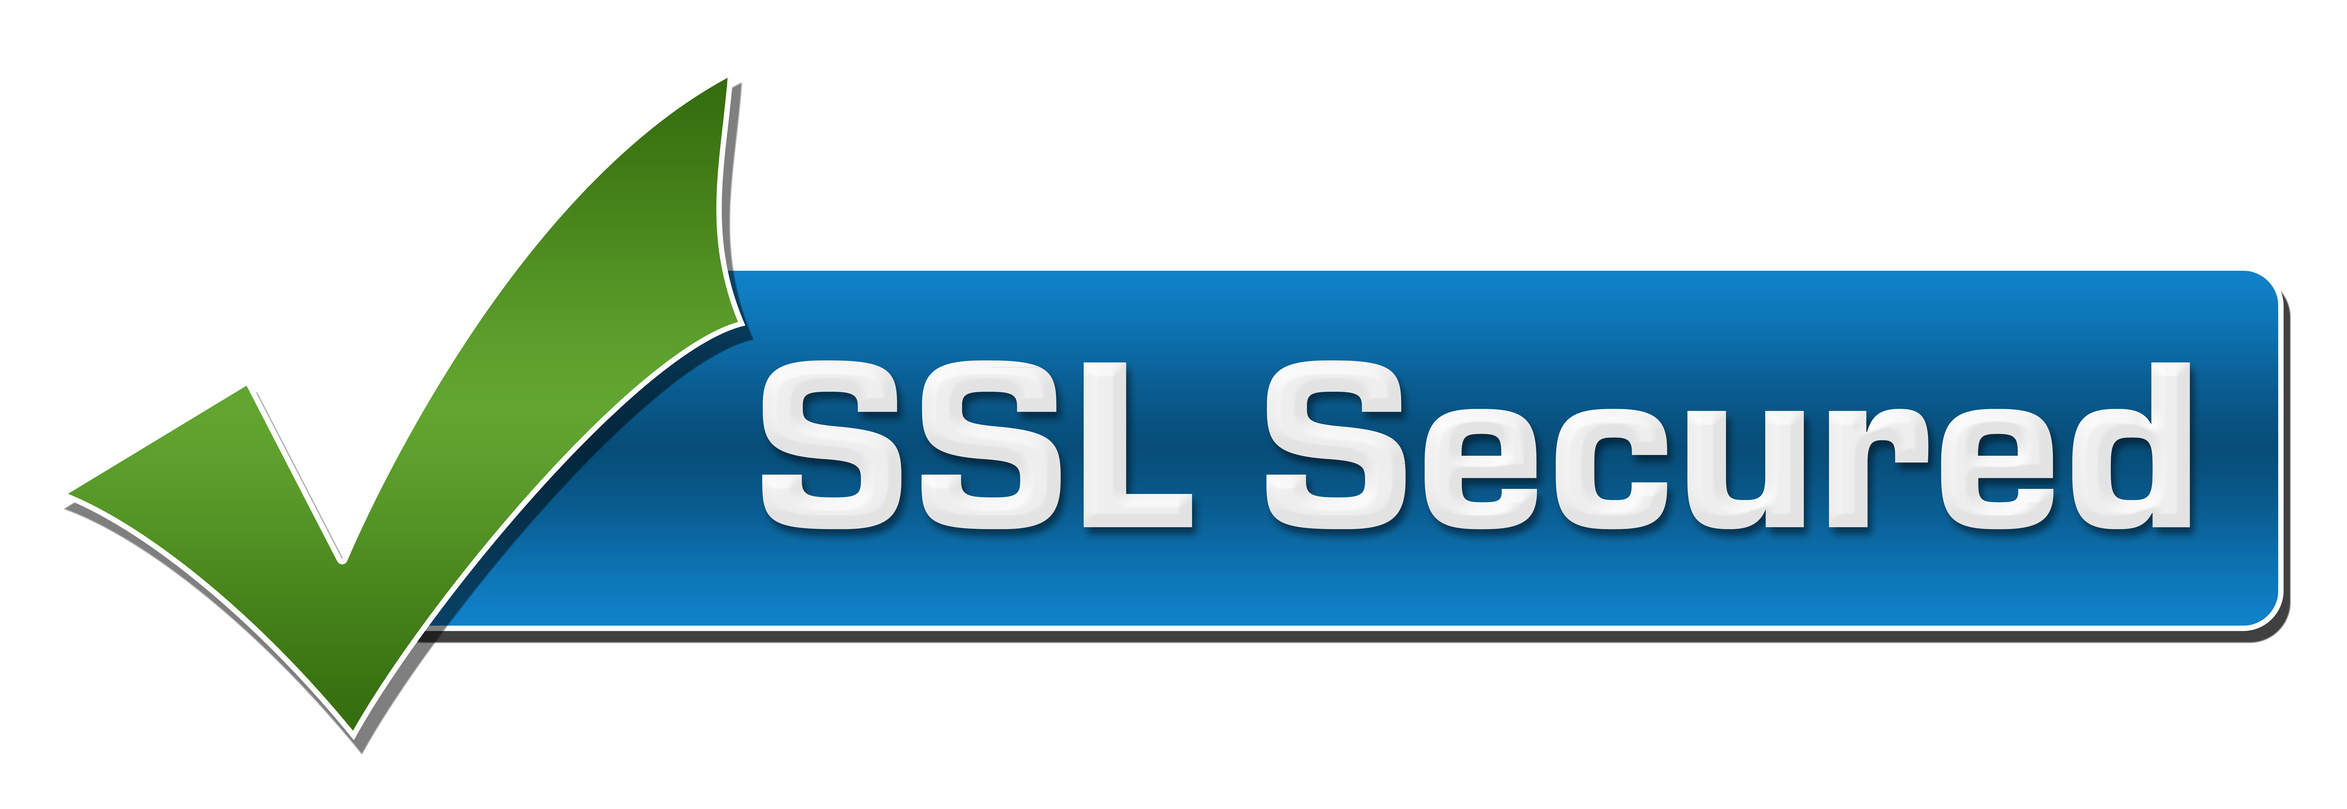 بهبود رتبه و بالا آوردن سایت با گواهی SSl